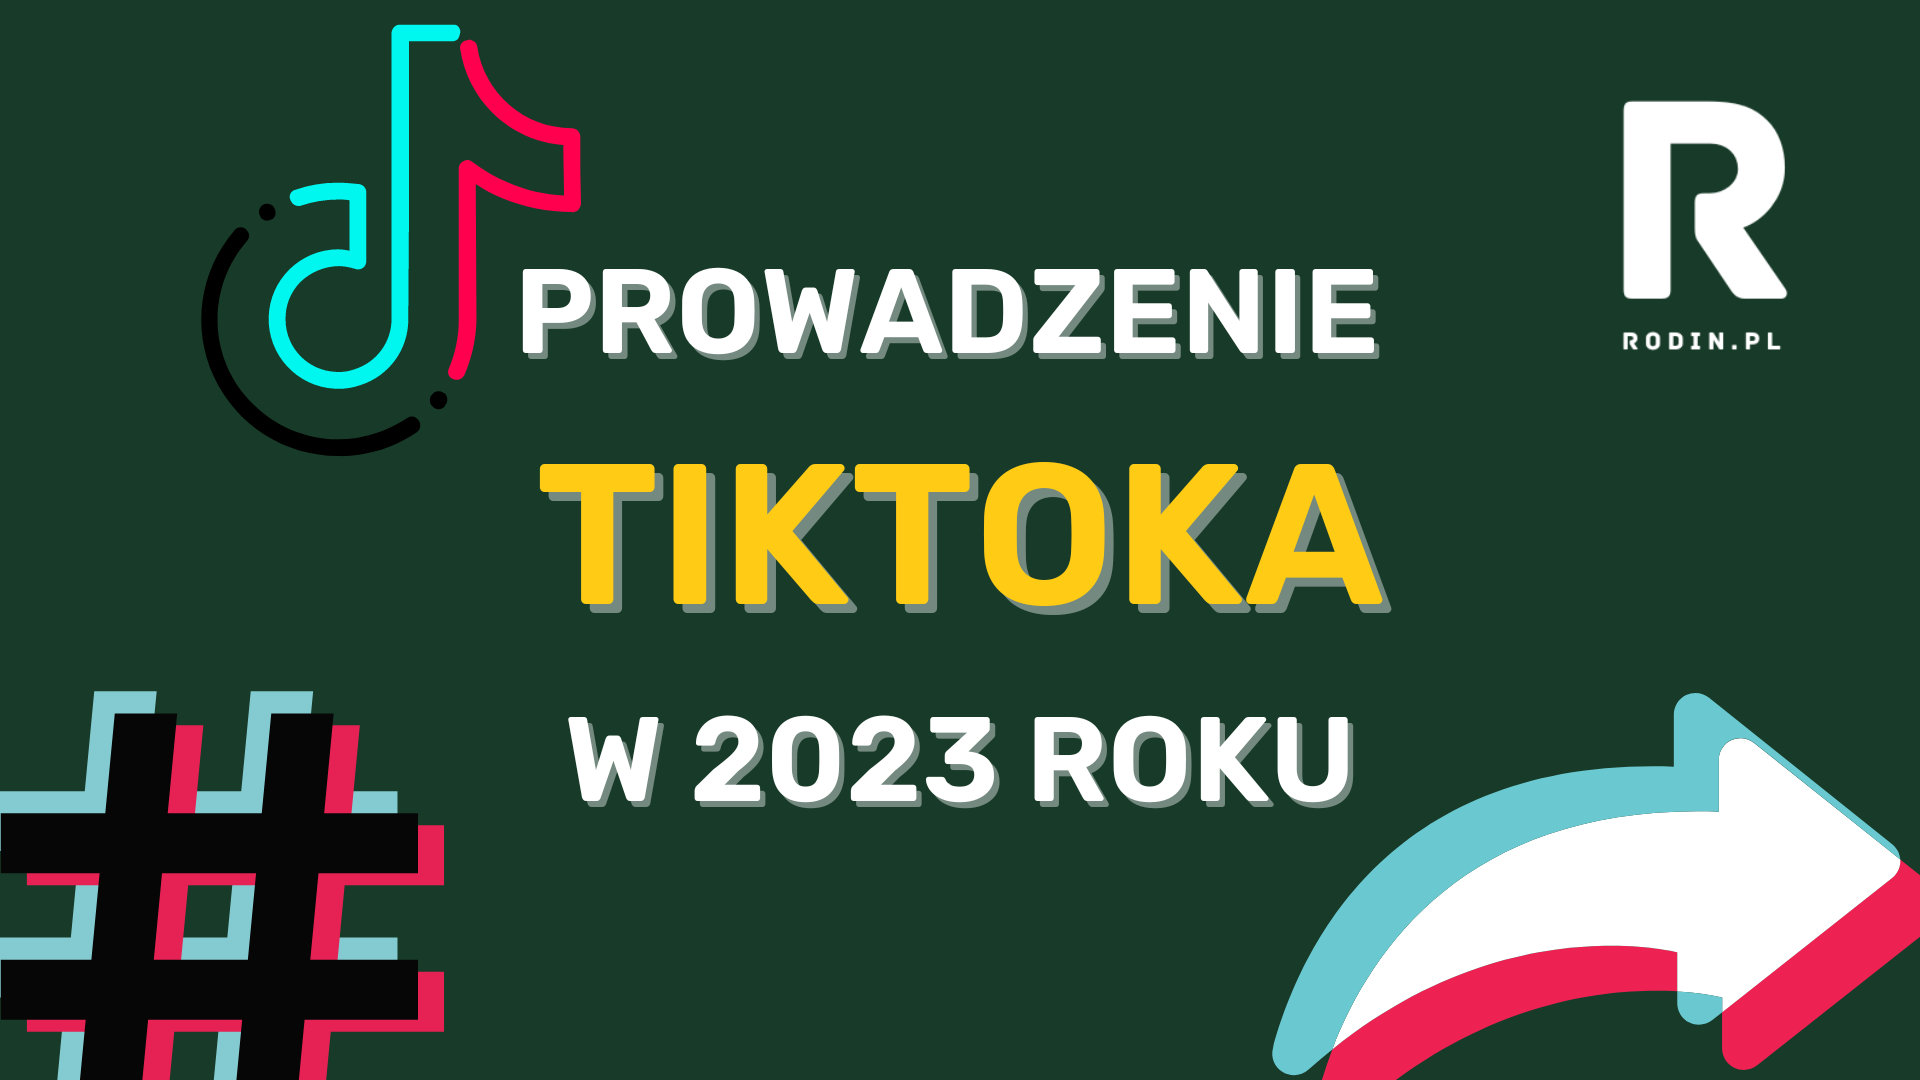 Prowadzenie TikToka w 2023 roku